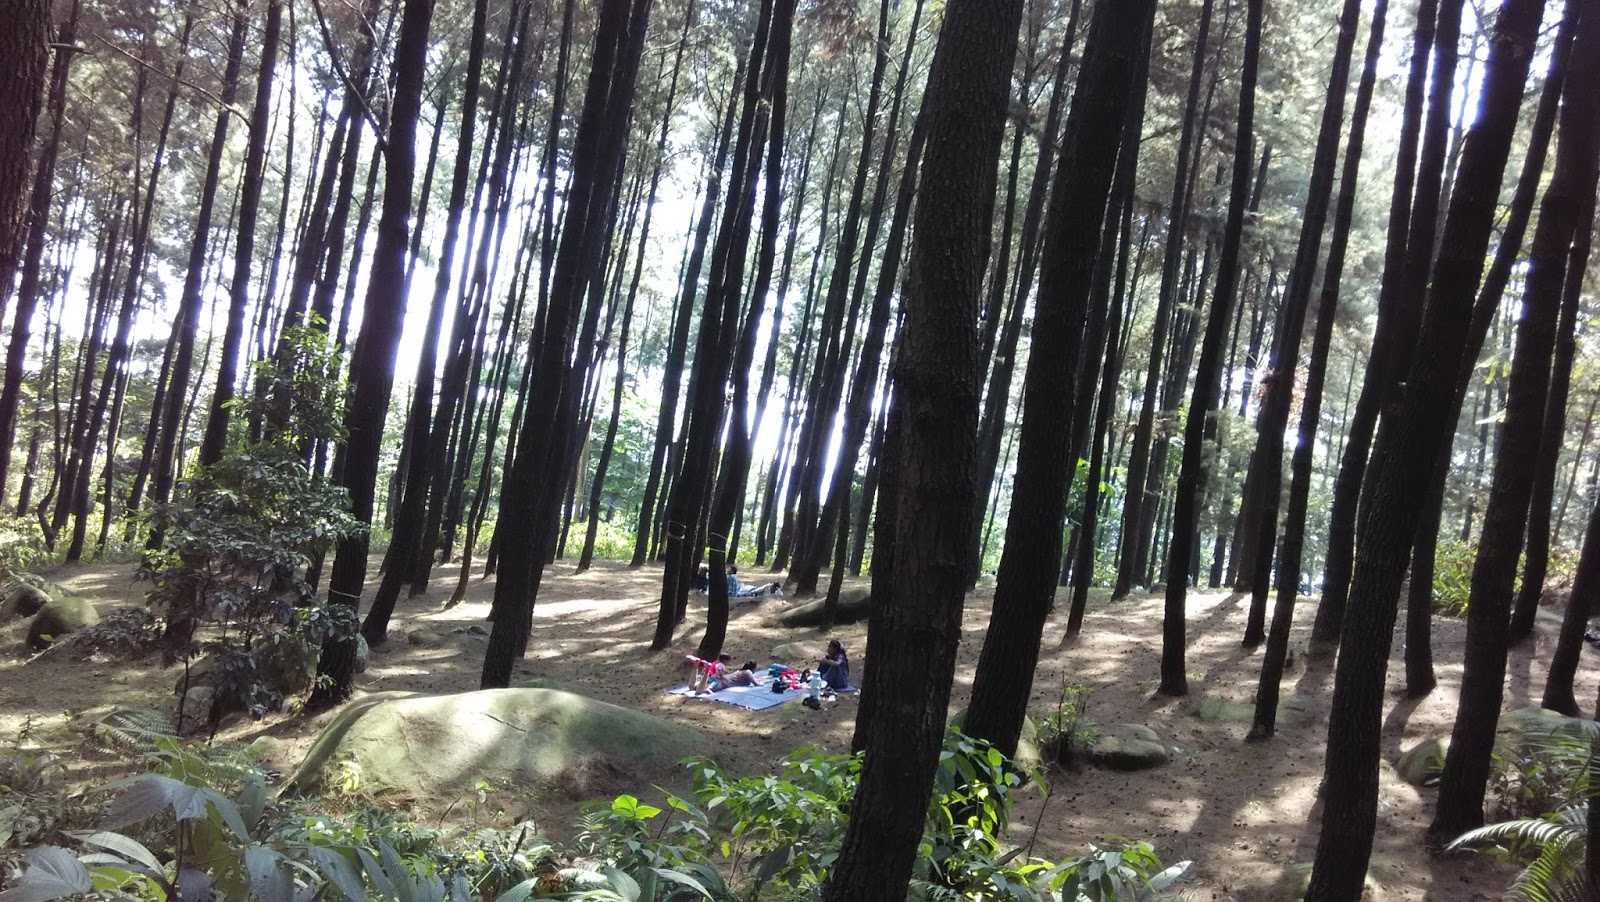 grantnsaipan Taman Patung Dan Bambu Ecoartpark